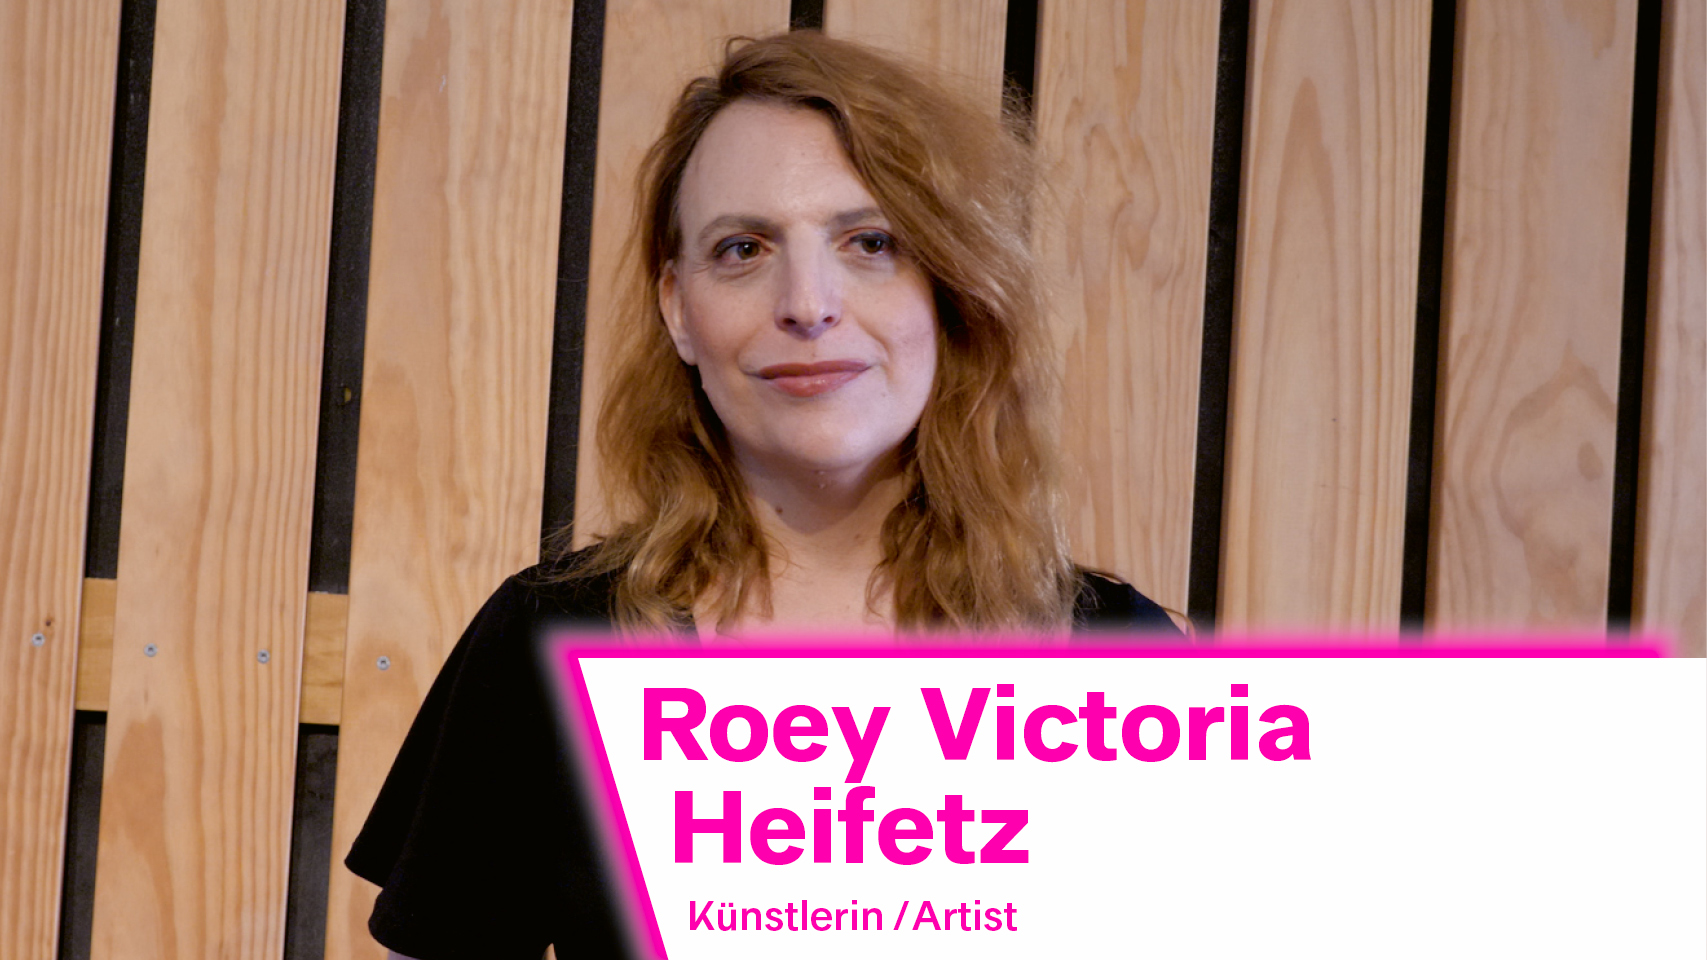 Das Interview zeigt die israelische Künstlerin Roey Victoria Heifetz. Sie trägt ein schwarzes Kleid und hat rotblonde Haare.